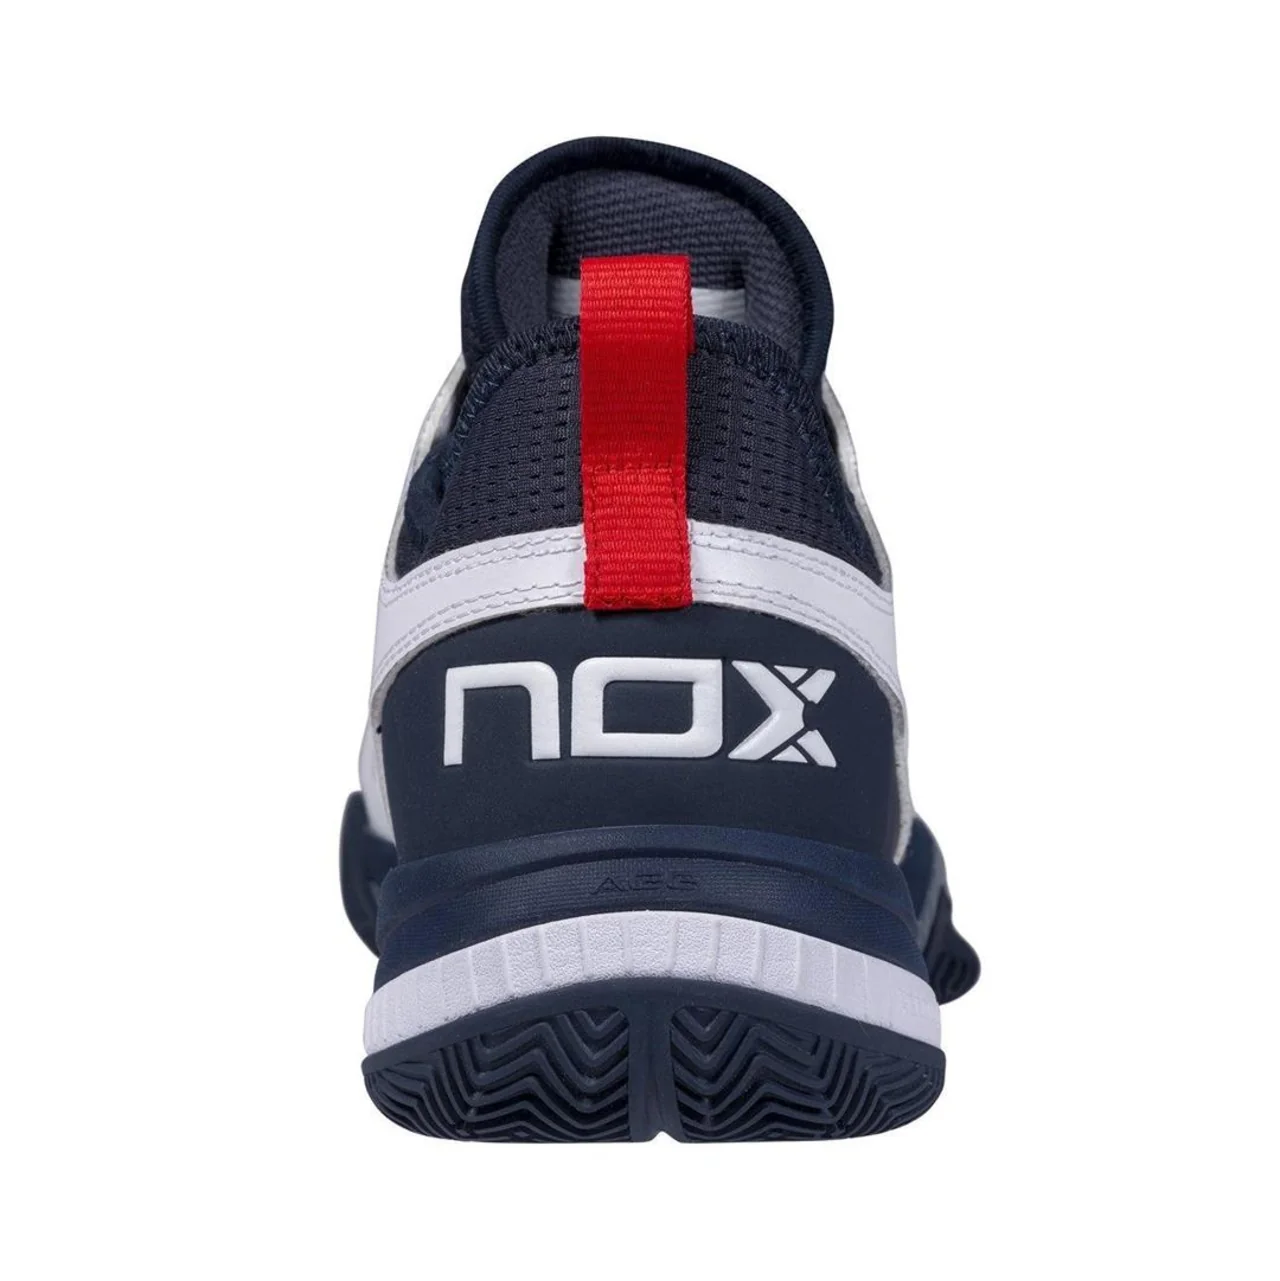 Nox Luxury Padel Nerbo White/Navy